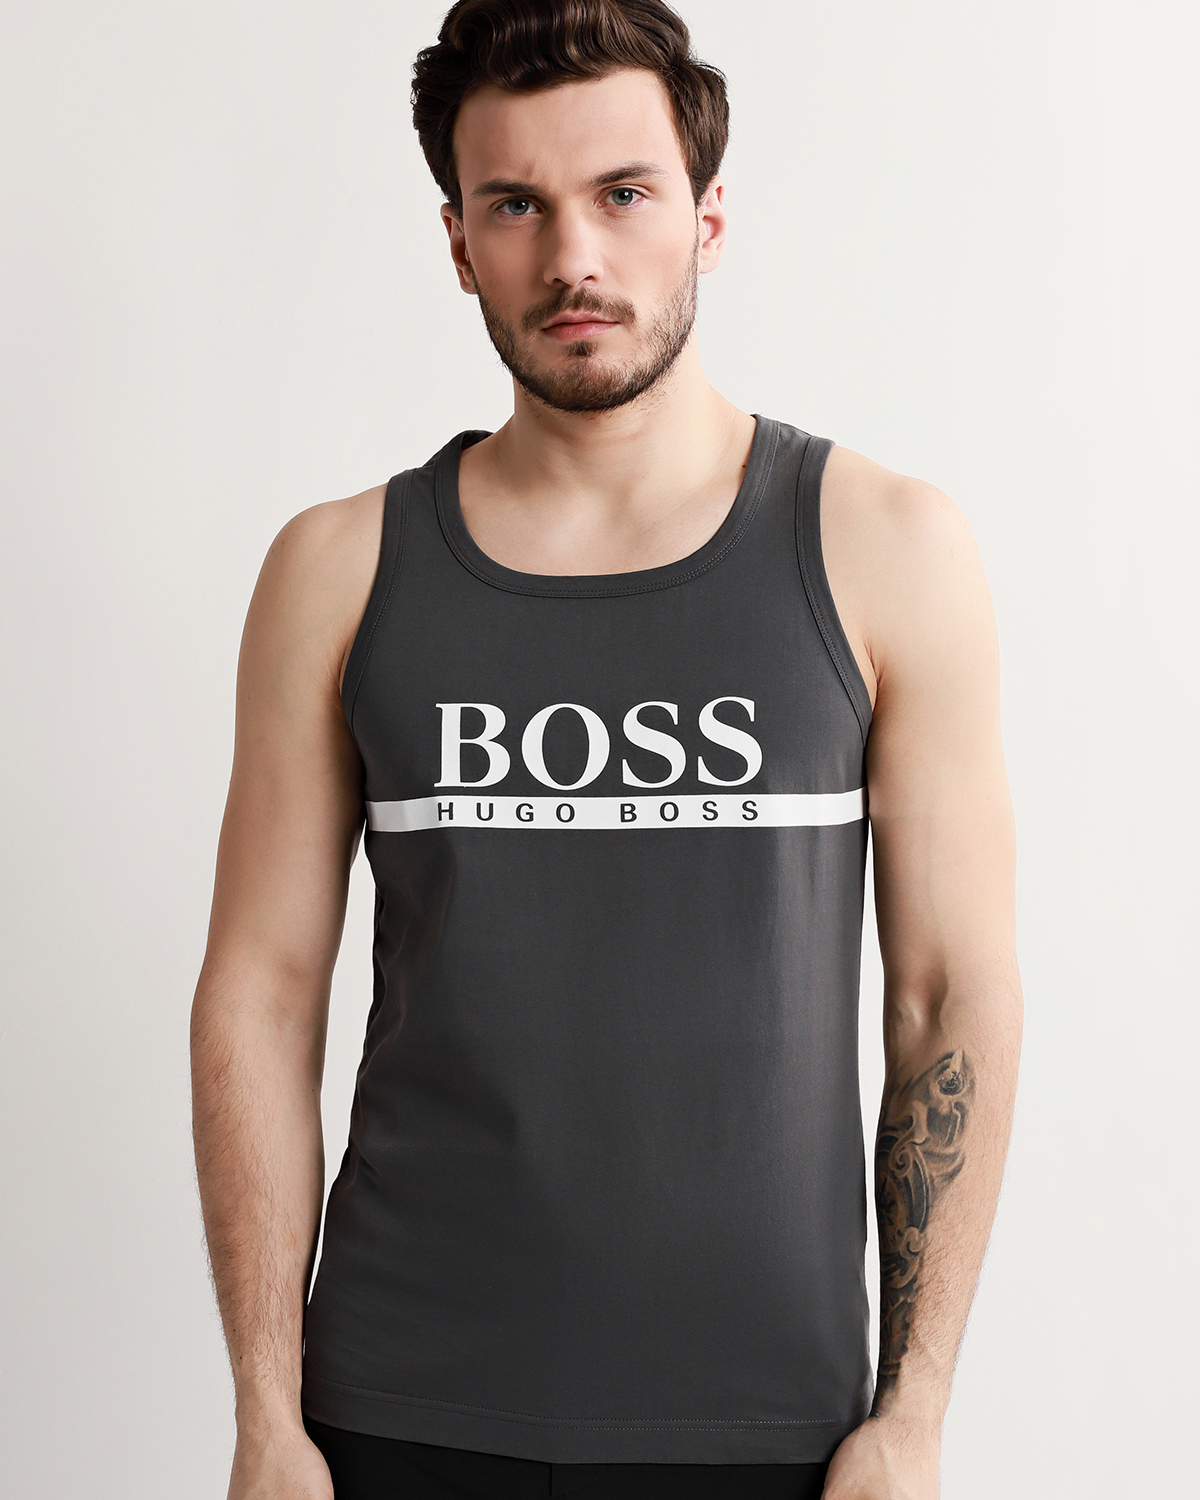 Купить футболку hugo. Майка Boss Hugo Boss. Футболка Boss Hugo Boss. Футболка Hugo Boss 2022. Майки Хуго босс мужские.